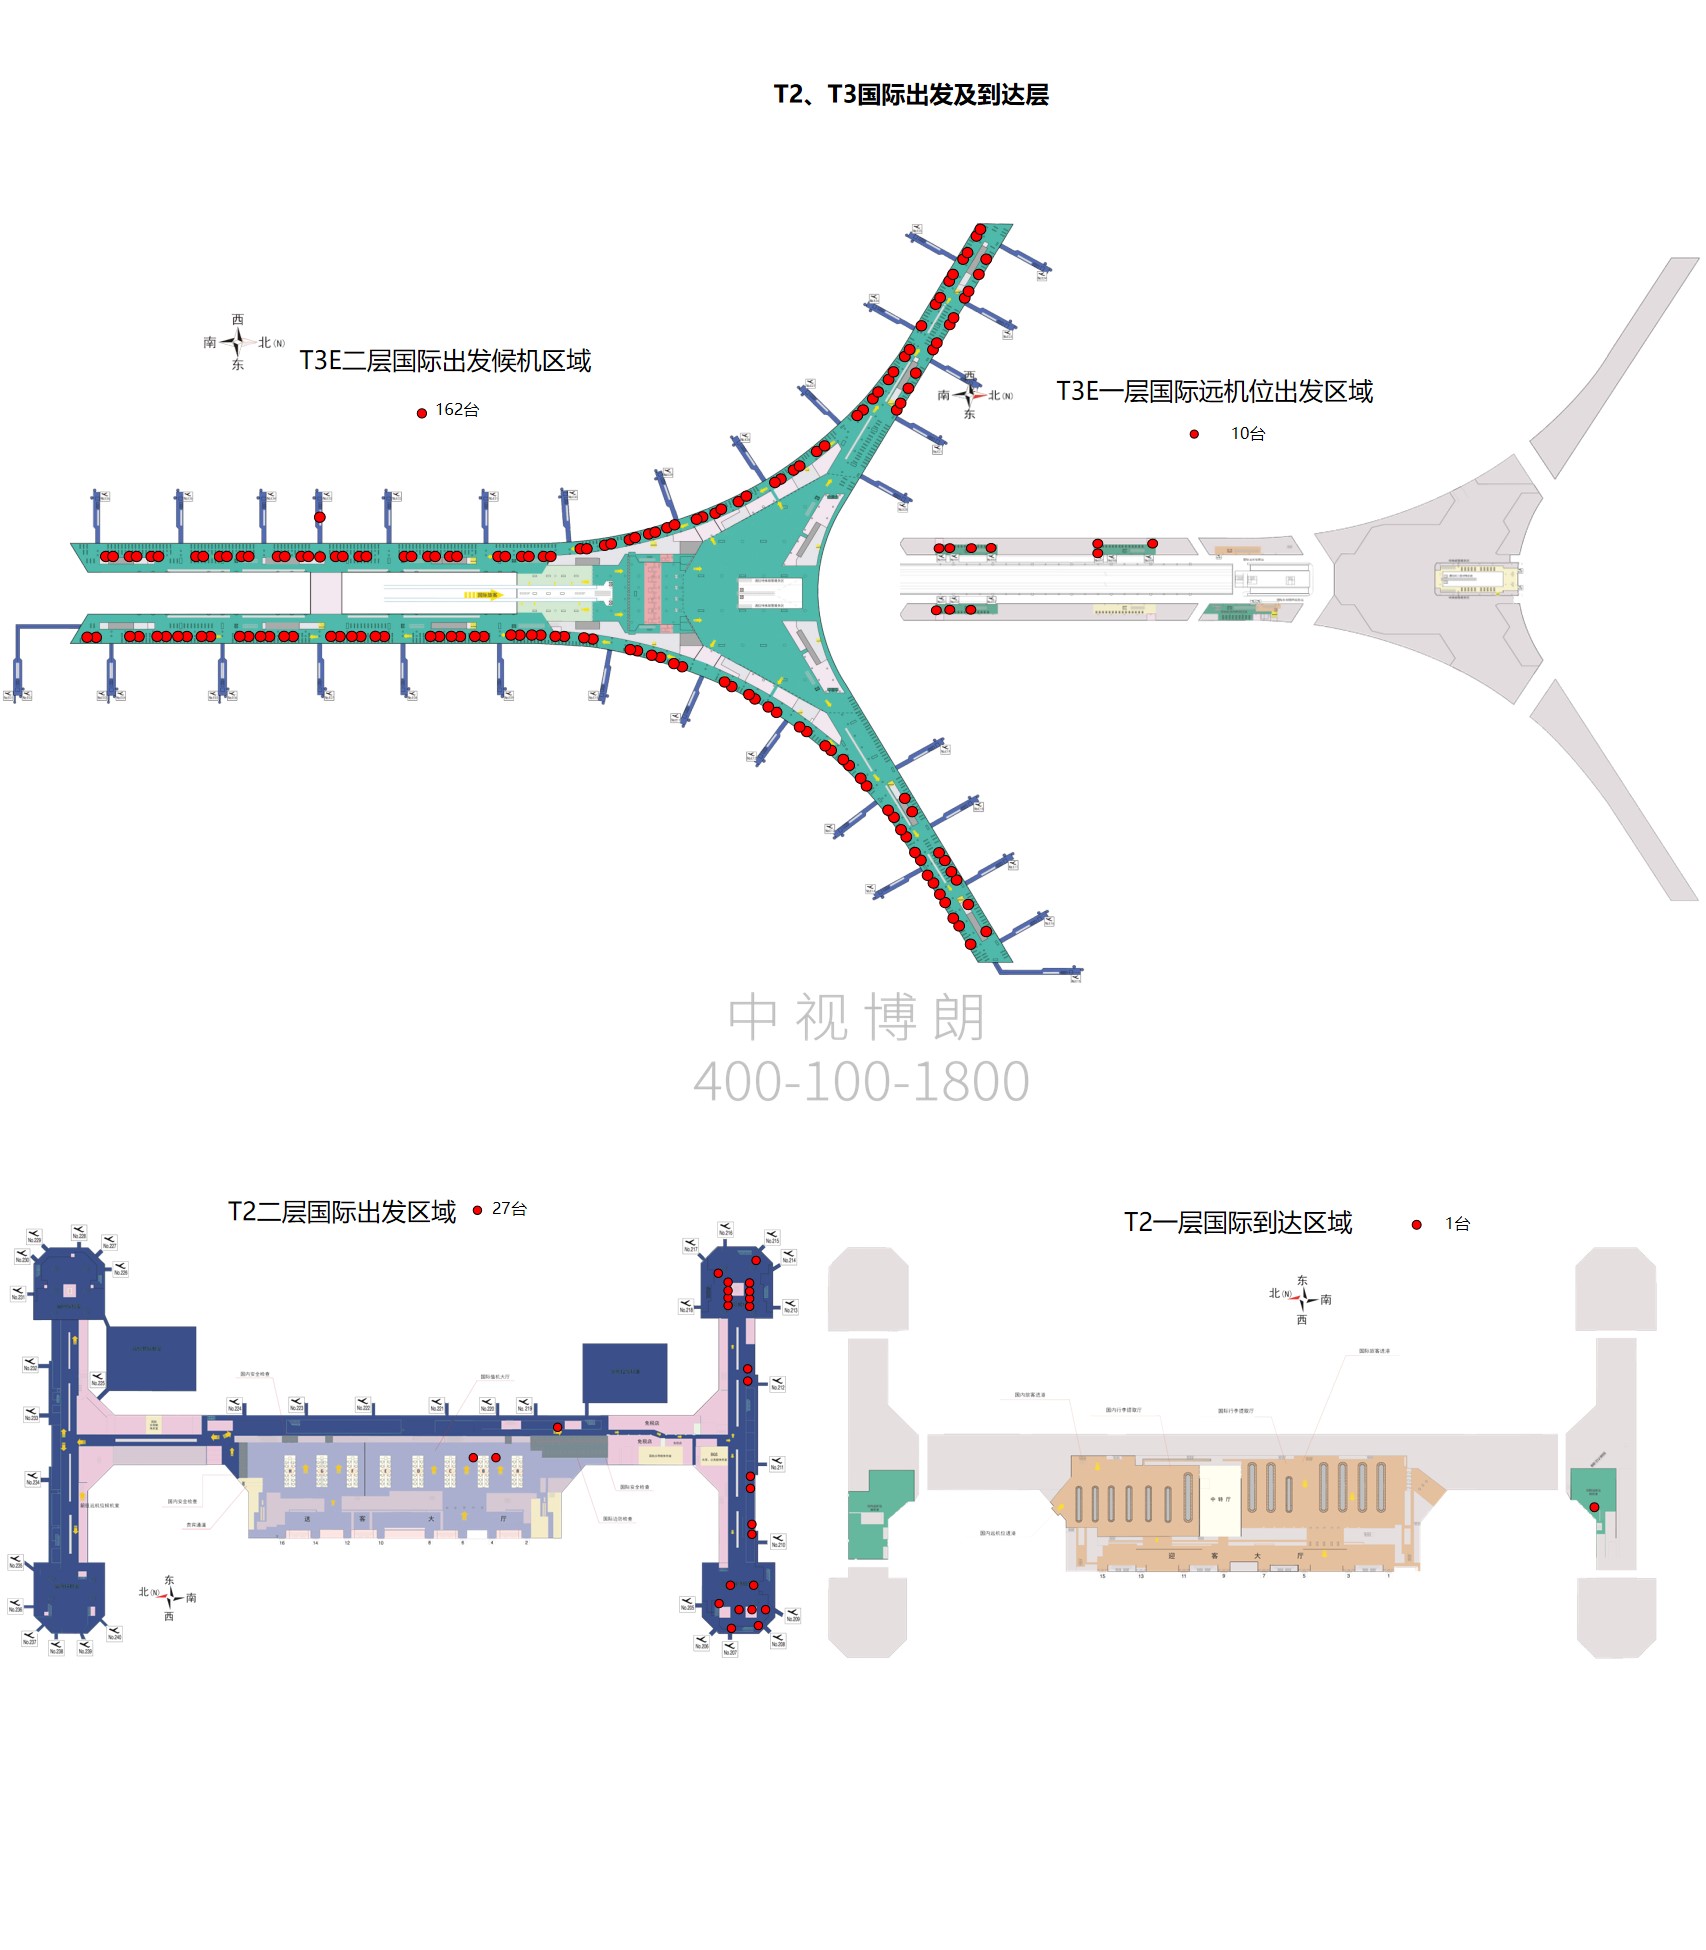 北京首都机场广告-T2T3国际出发到达刷屏套装位置图